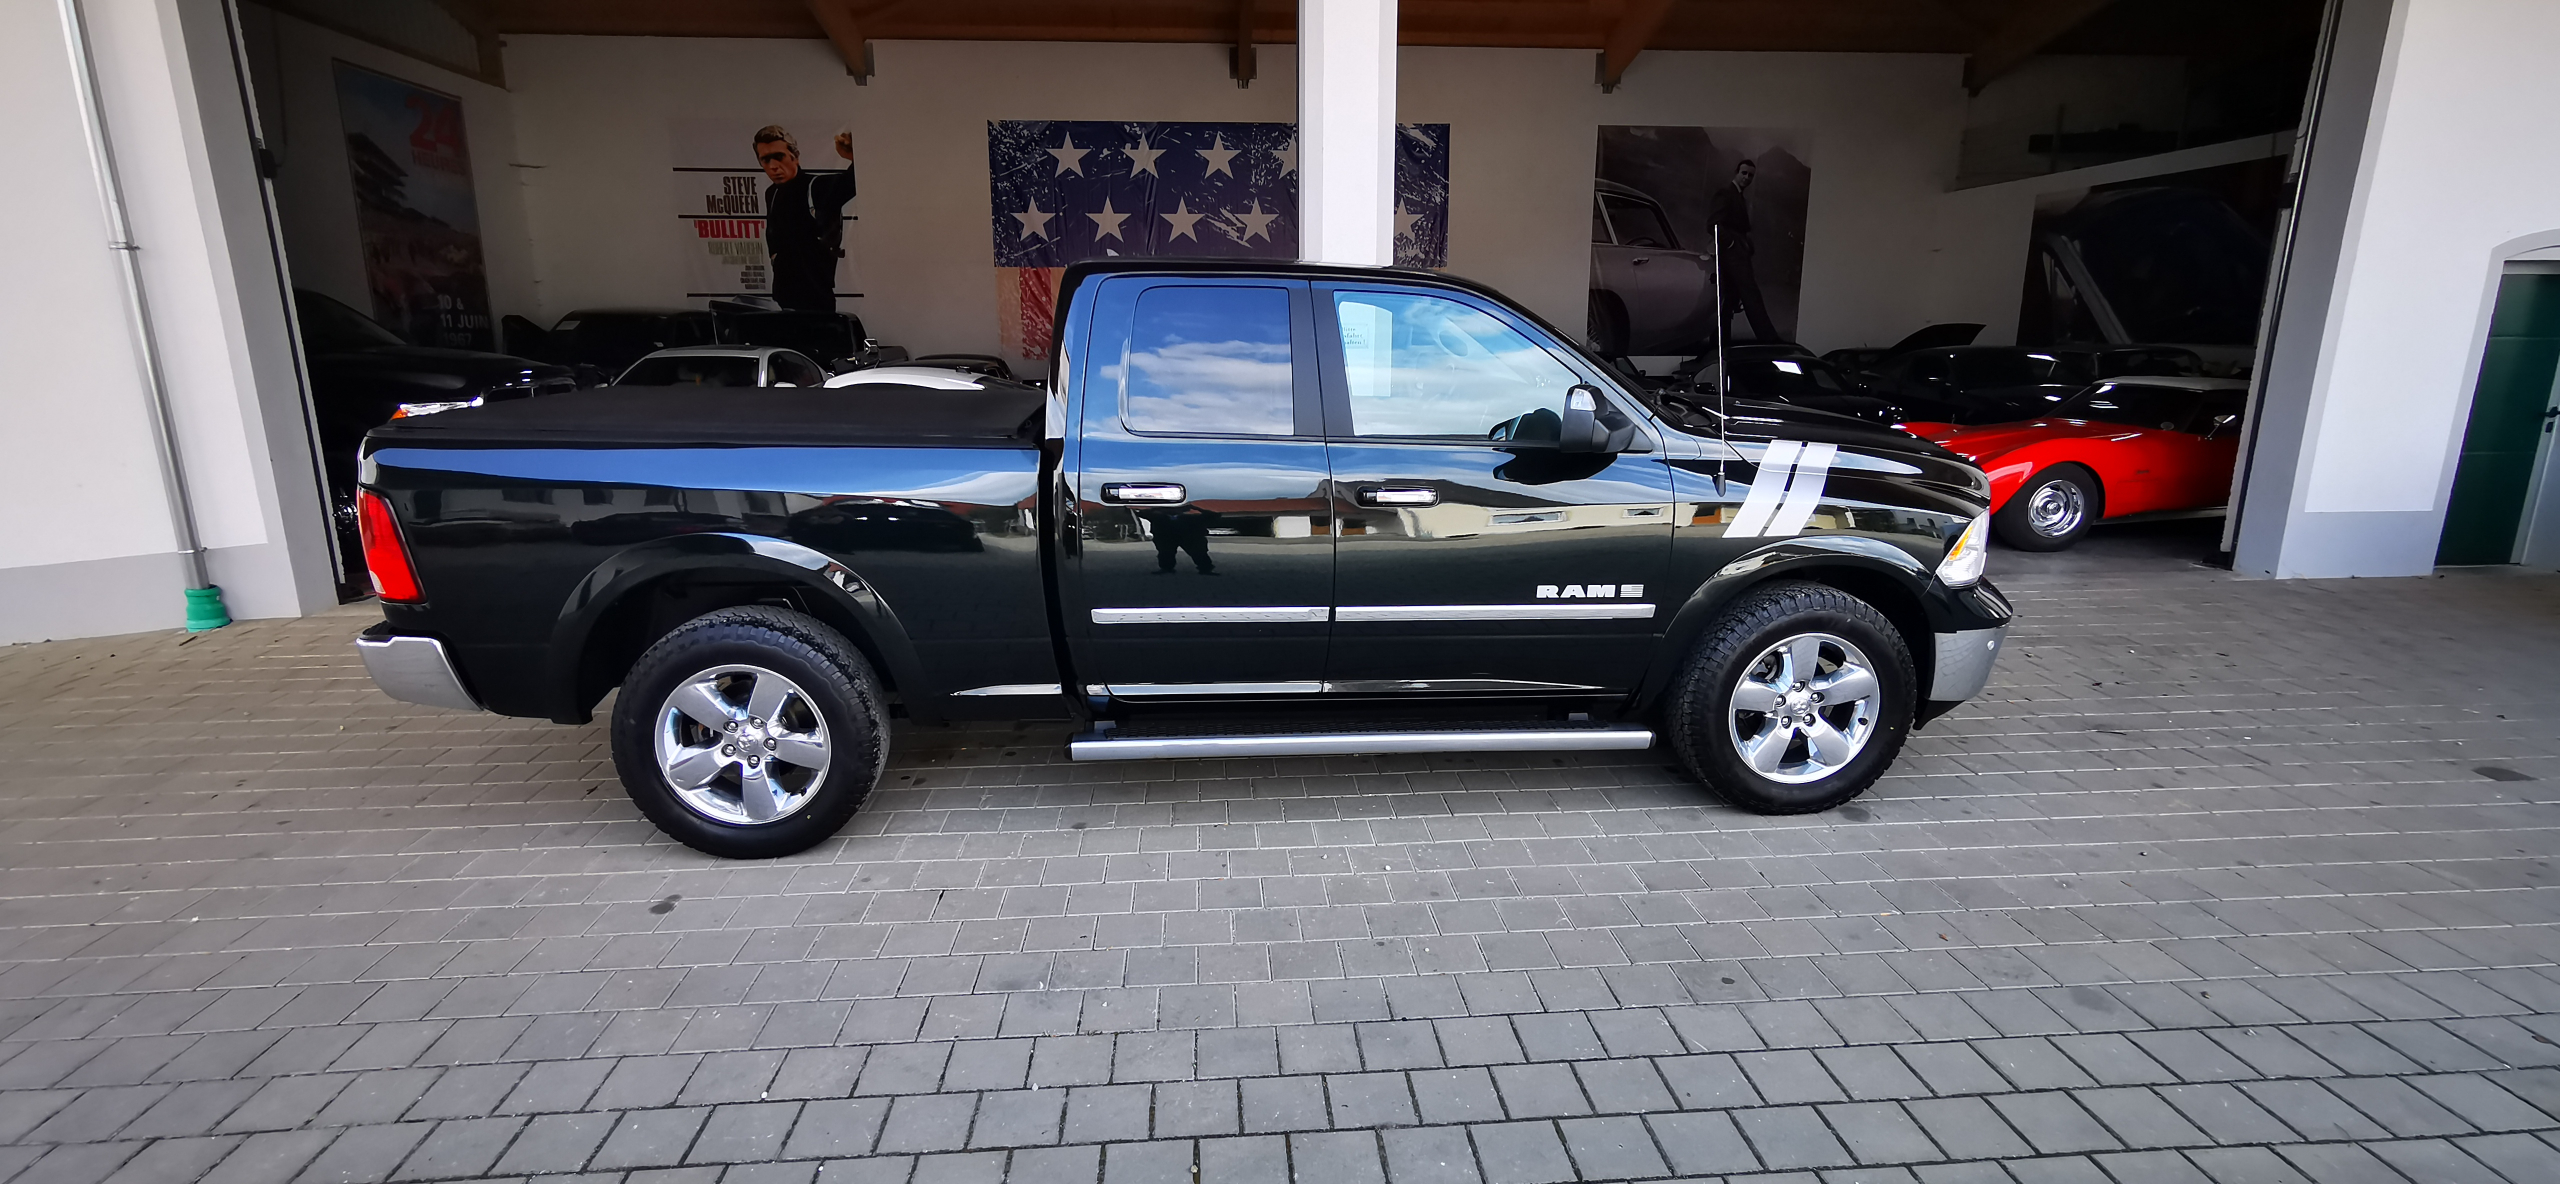 2017 Dodge Ram 1500 BigHorn Quad Cab zu verkaufen Villach